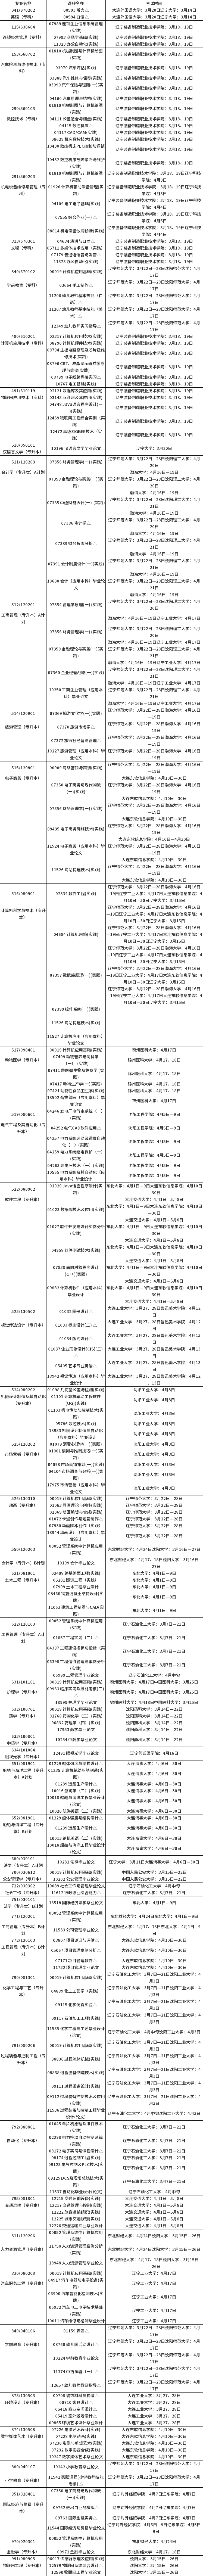 辽宁2021年上半年自考实践环节考试课程安排表(开考专业)